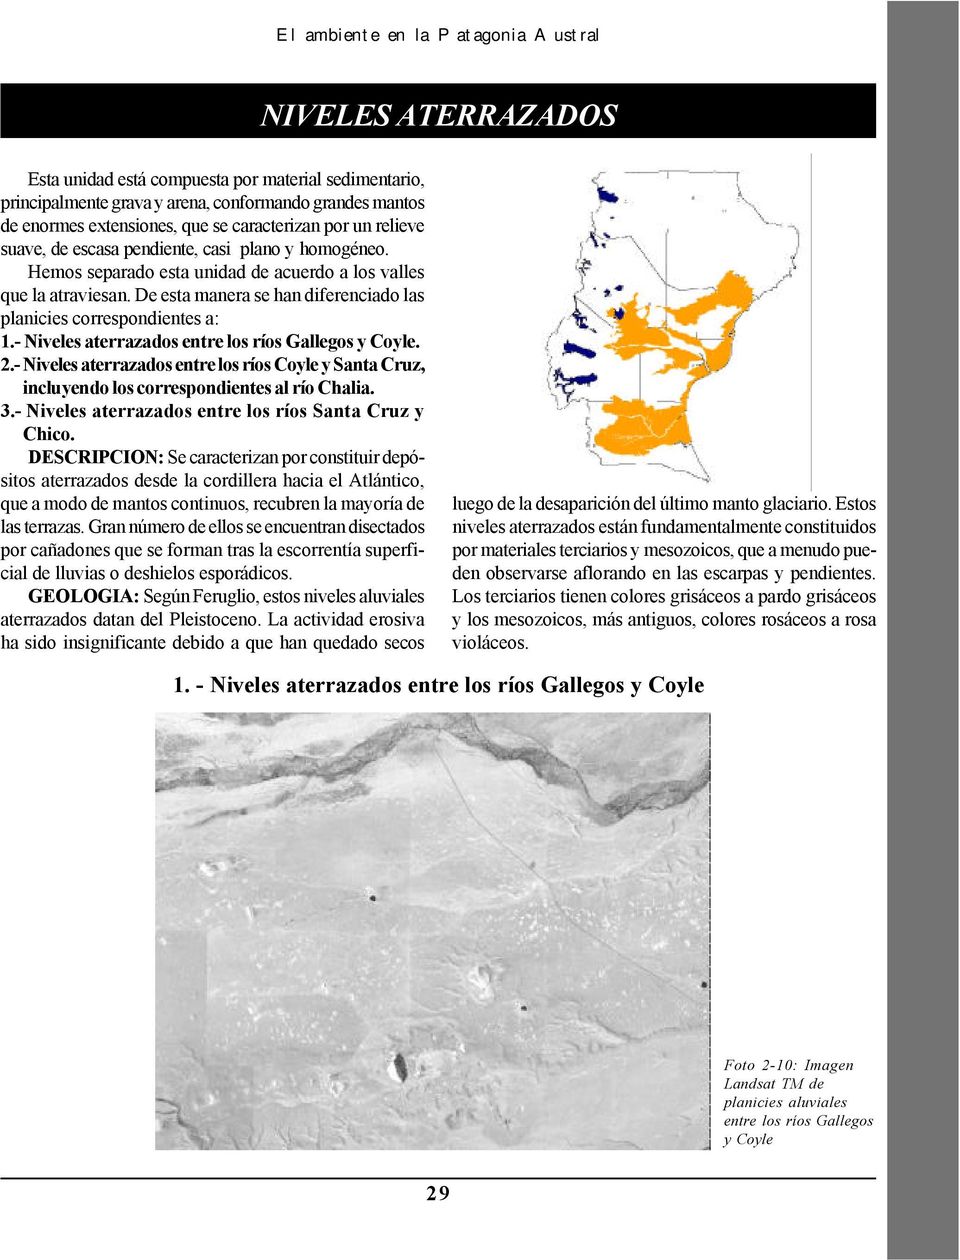 De esta manera se han diferenciado las planicies correspondientes a: 1.- Niveles aterrazados entre los ríos Gallegos y Coyle. 2.